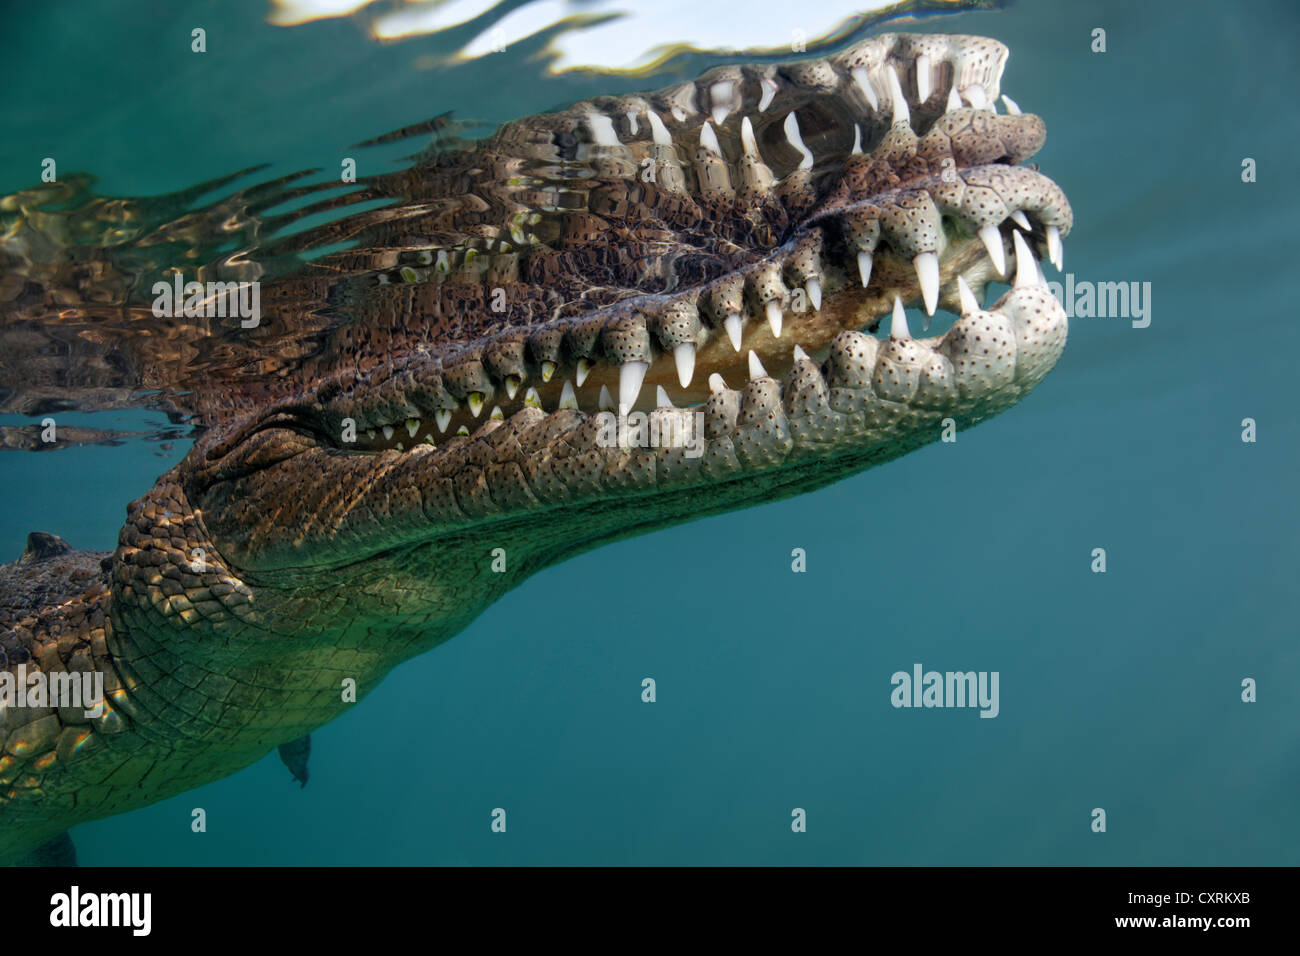 Coccodrillo di acqua salata o di estuario o coccodrillo Indo-pacifico Crocodile (Crocodylus porosus), testa, bocca, la serie di denti, subacquea Foto Stock